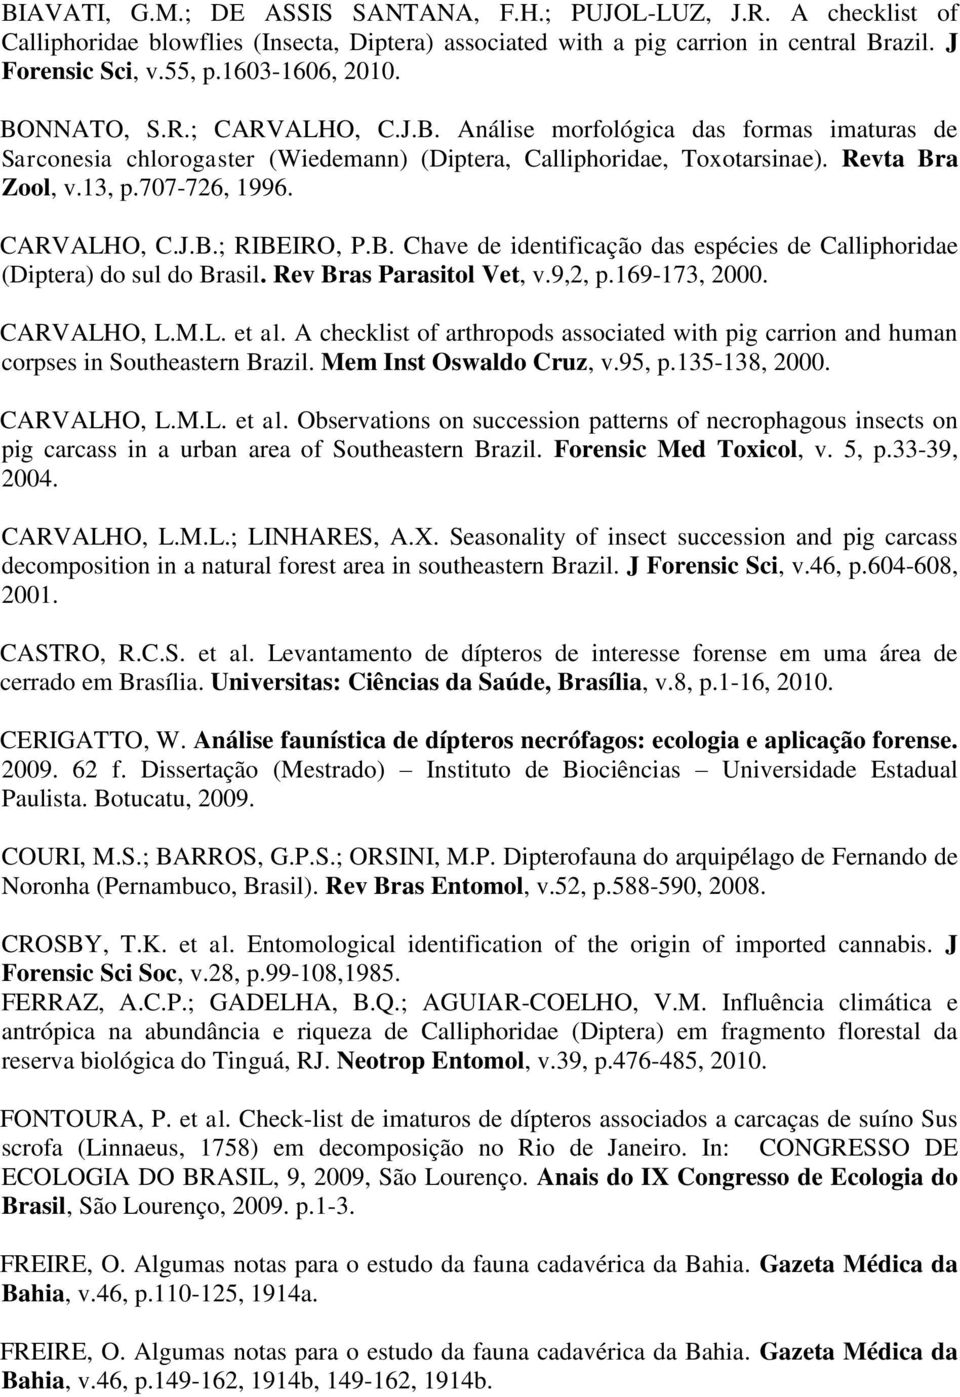 707-726, 1996. CARVALHO, C.J.B.; RIBEIRO, P.B. Chave de identificação das espécies de Calliphoridae (Diptera) do sul do Brasil. Rev Bras Parasitol Vet, v.9,2, p.169-173, 2000. CARVALHO, L.M.L. et al.